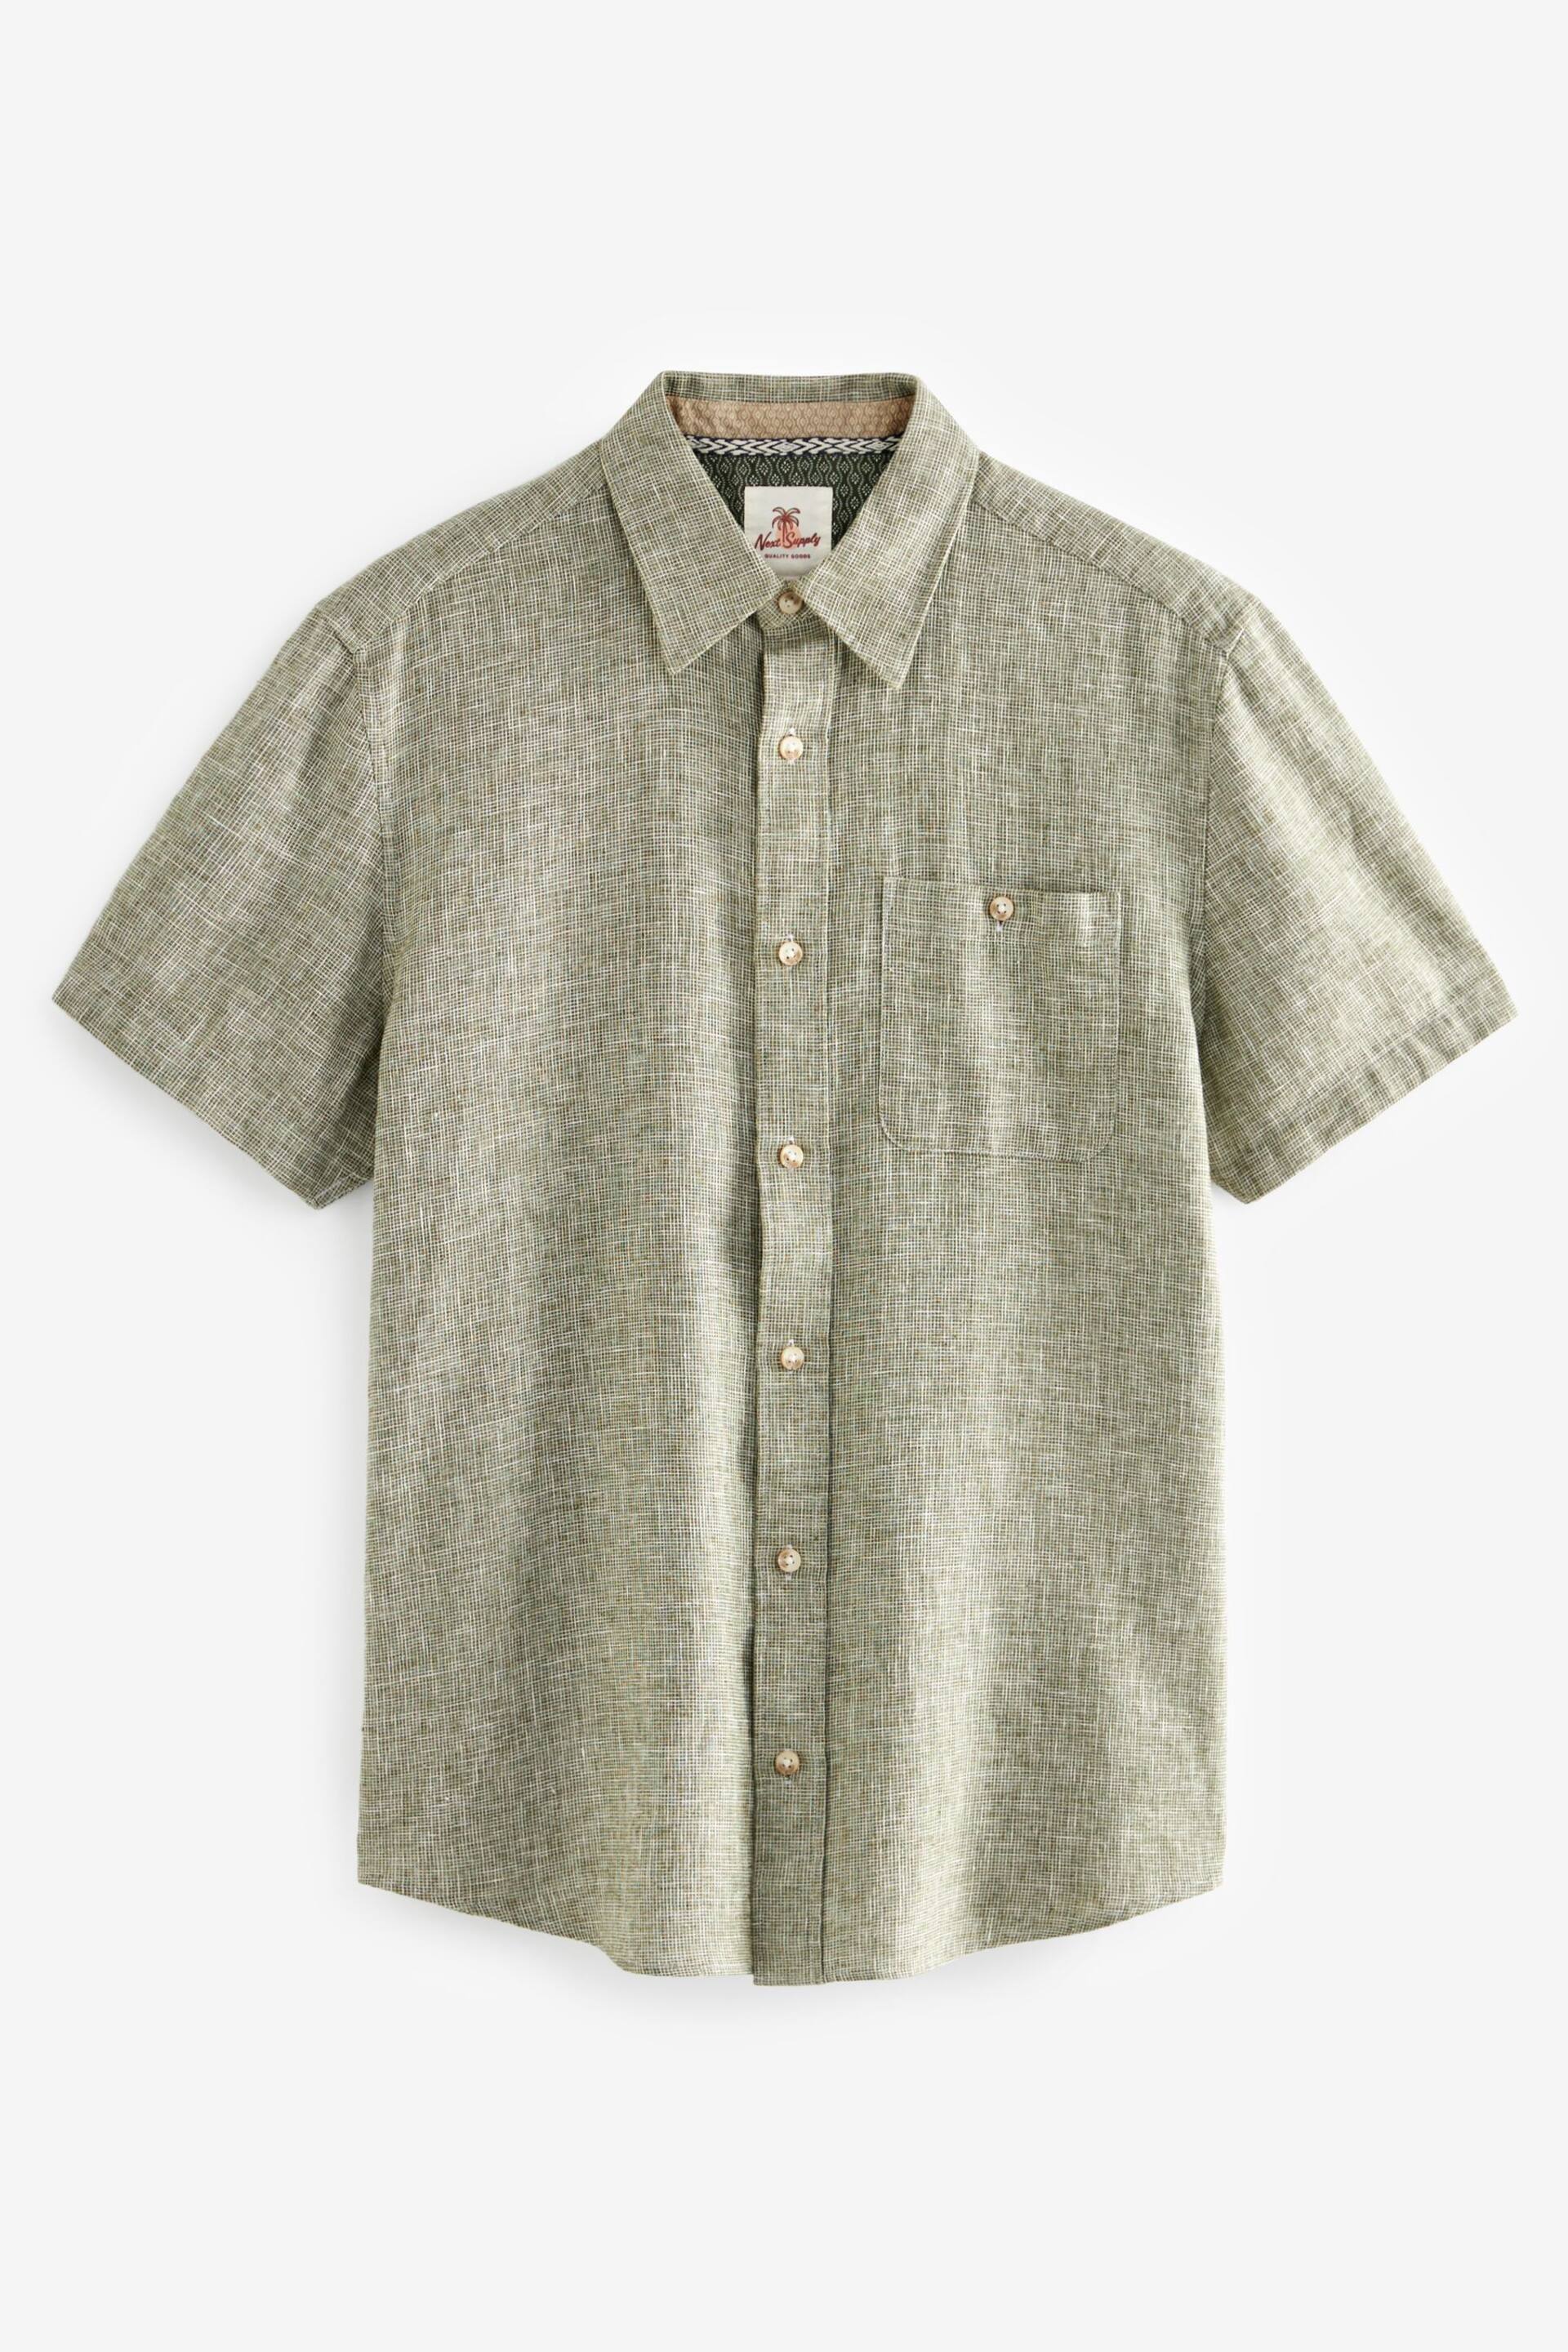 Green Standard Collar Linen Blend Short Sleeve Shirt - Image 6 of 8